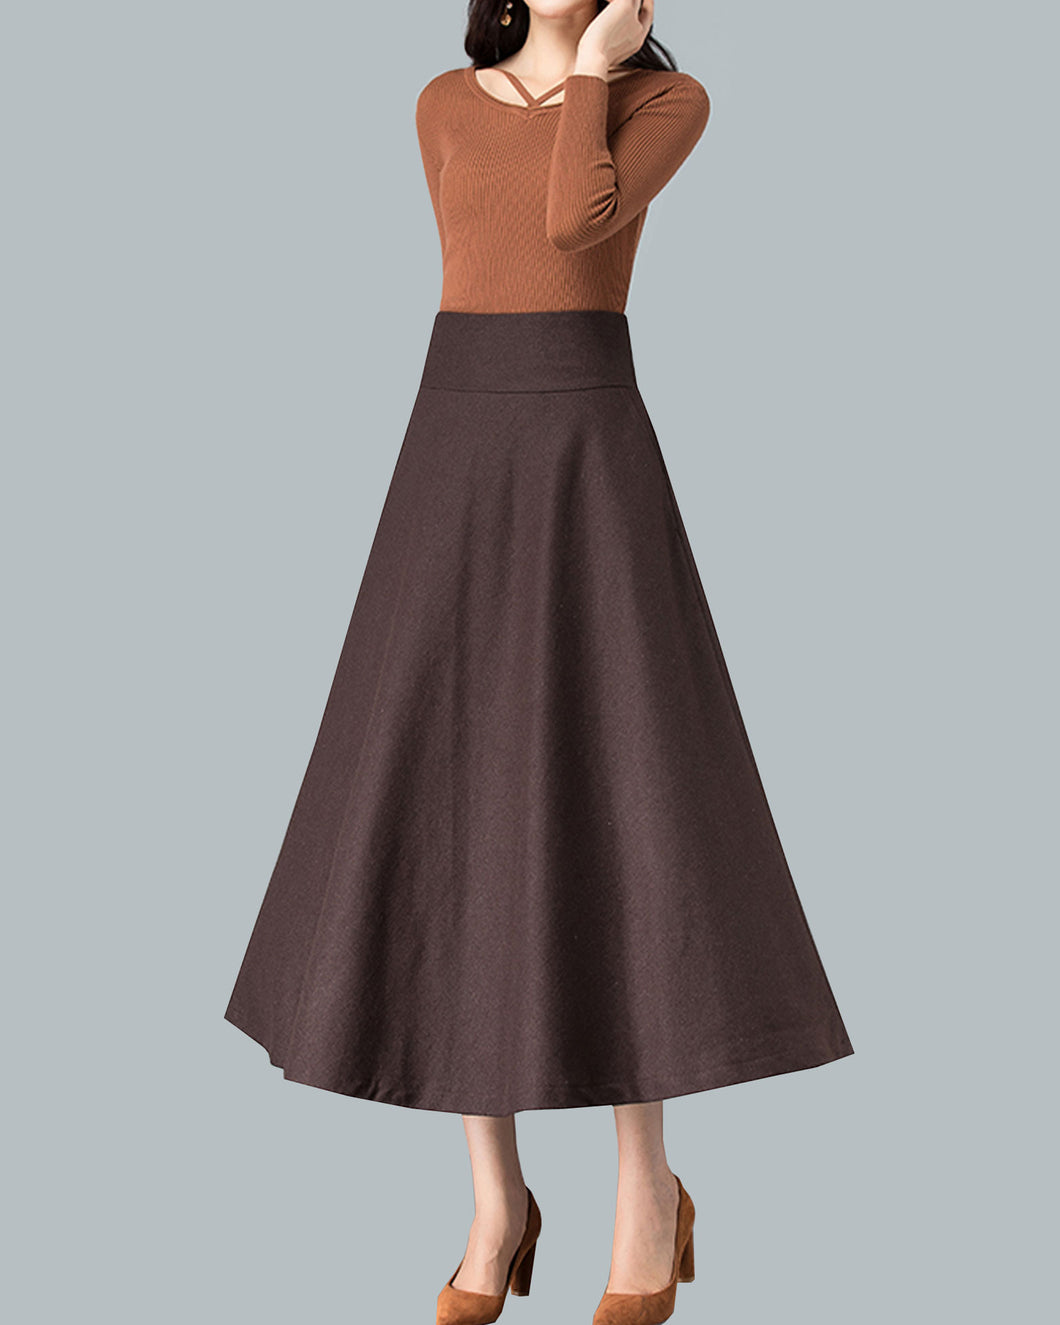 Winter skirt, Midi skirt, Wool skirt, dark gray skirt, long skirt